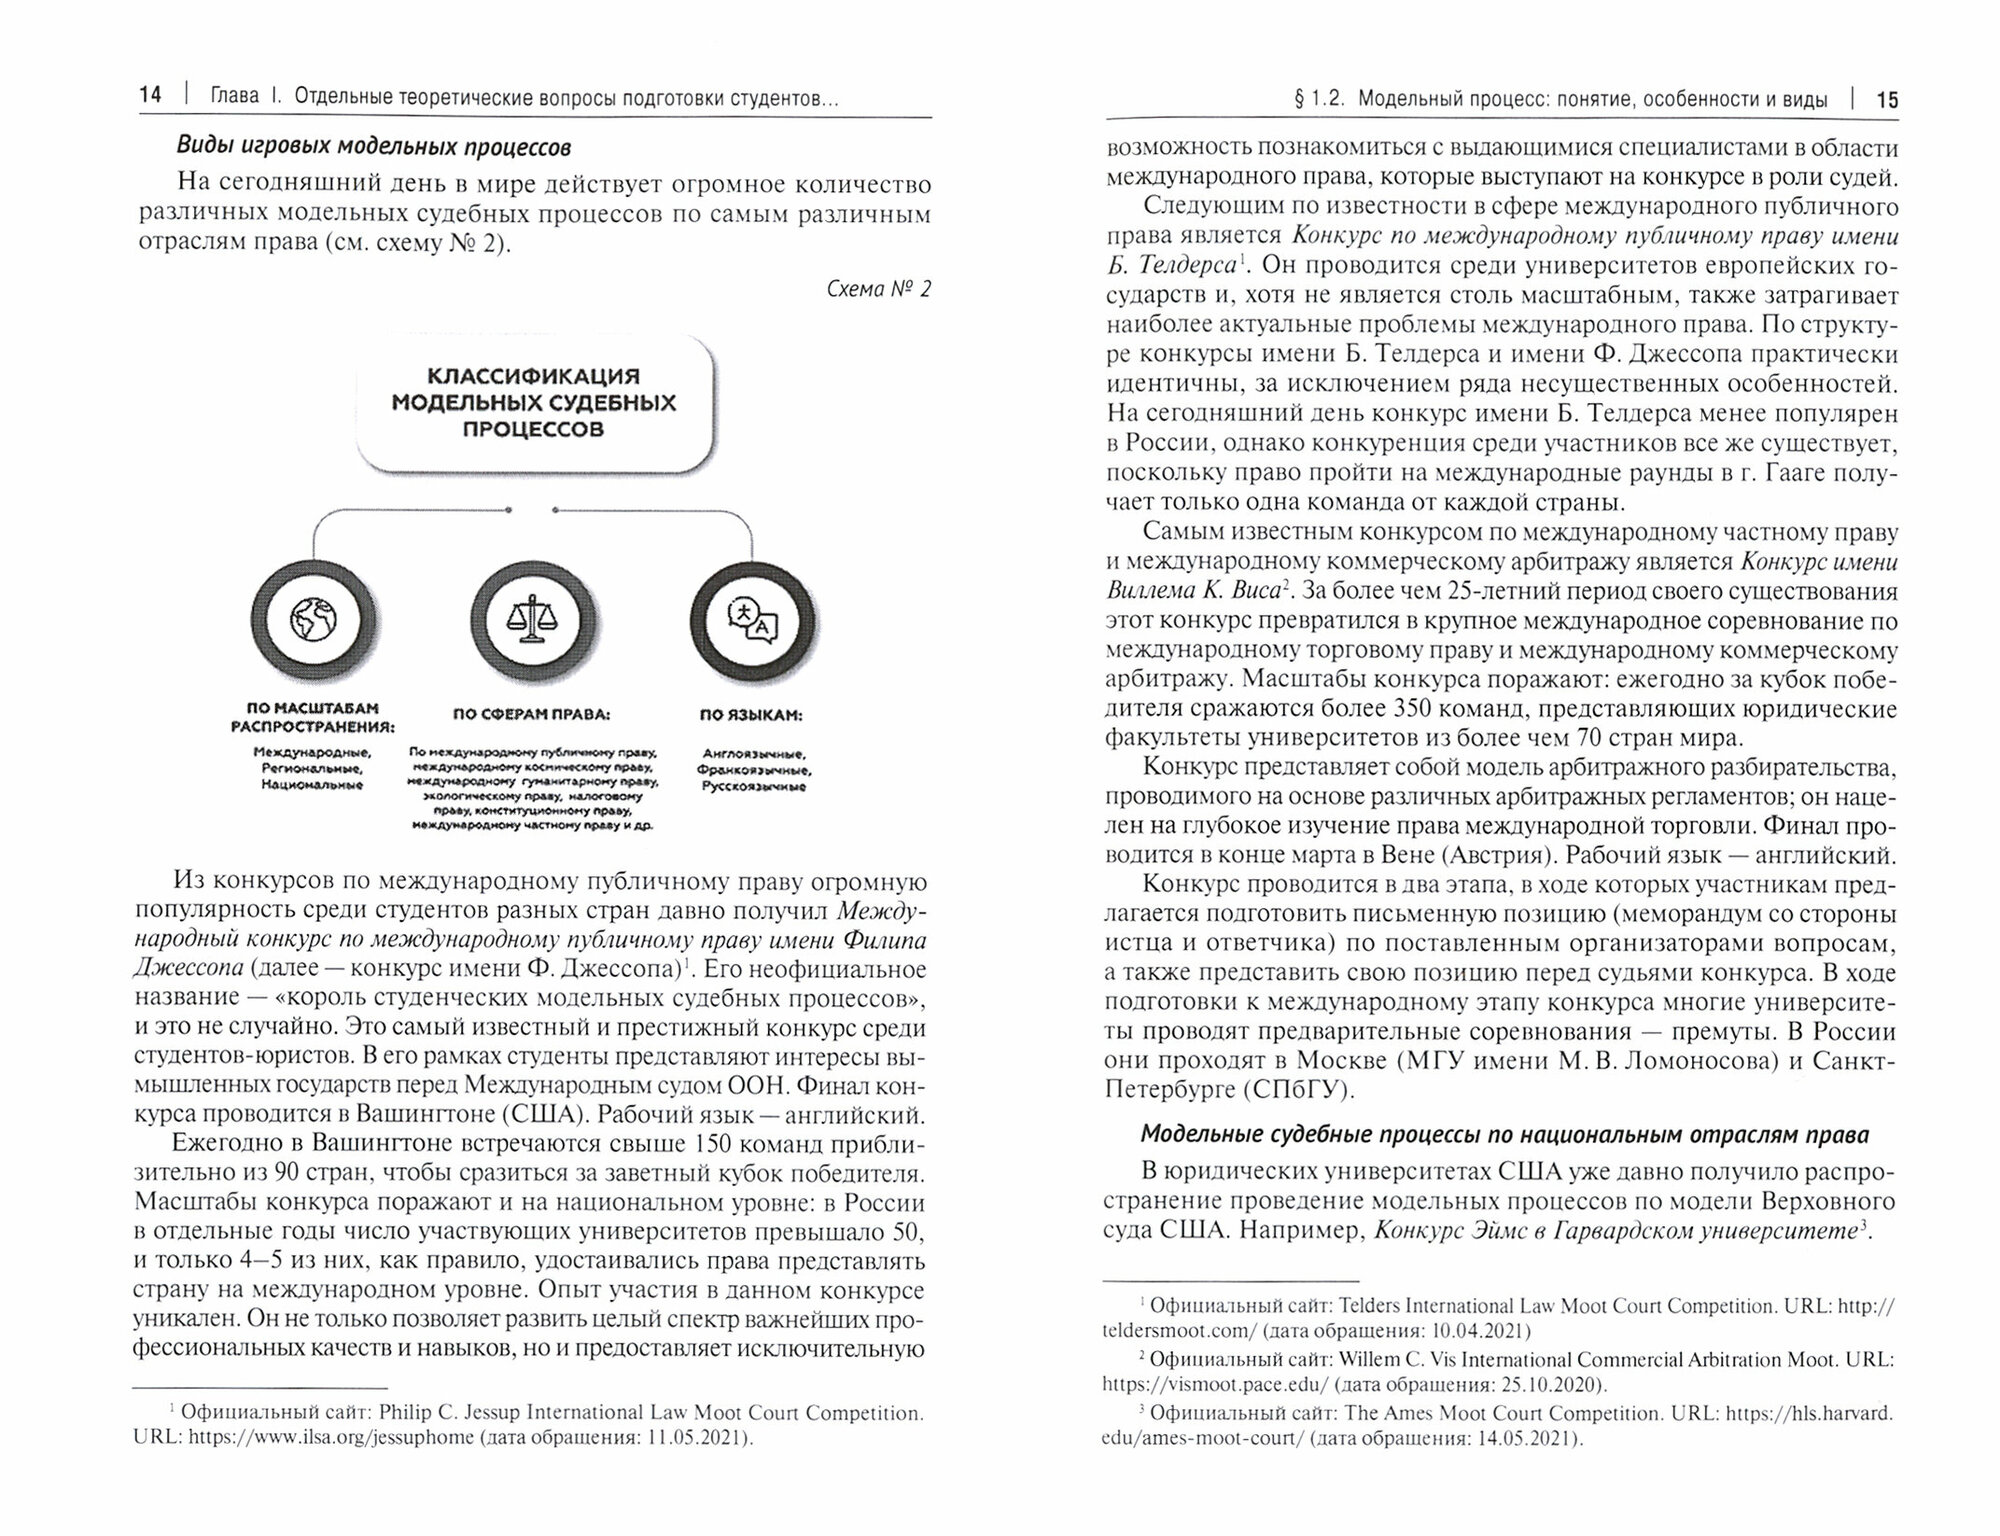 Международные и всероссийские конкурсы как новый тренд современного юридического образования - фото №2